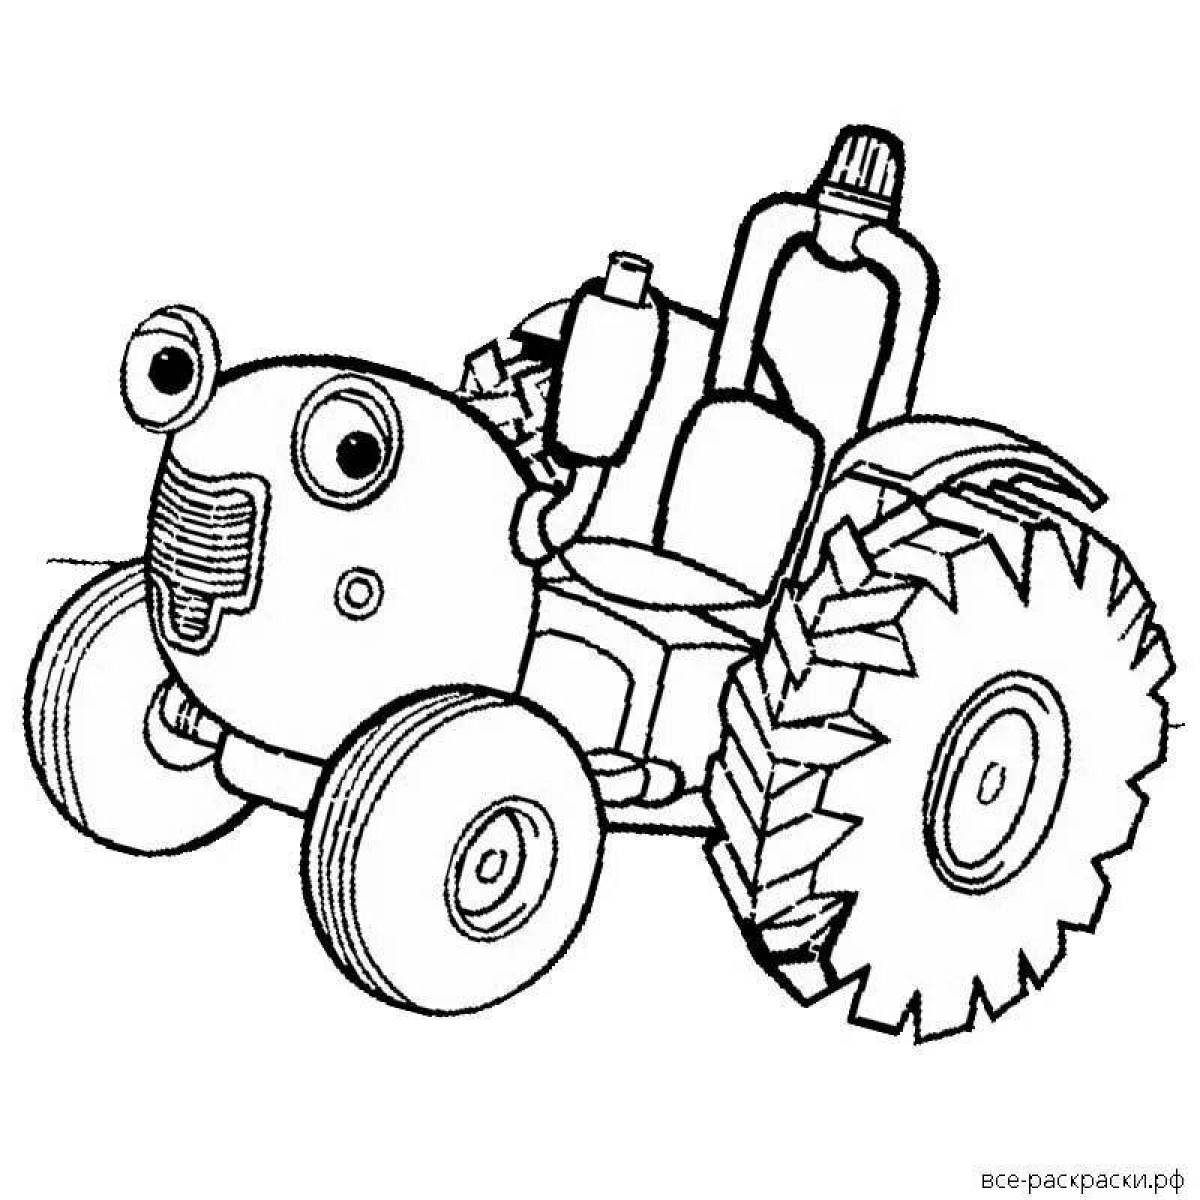 Причудливая раскраска «синий трактор» для детей